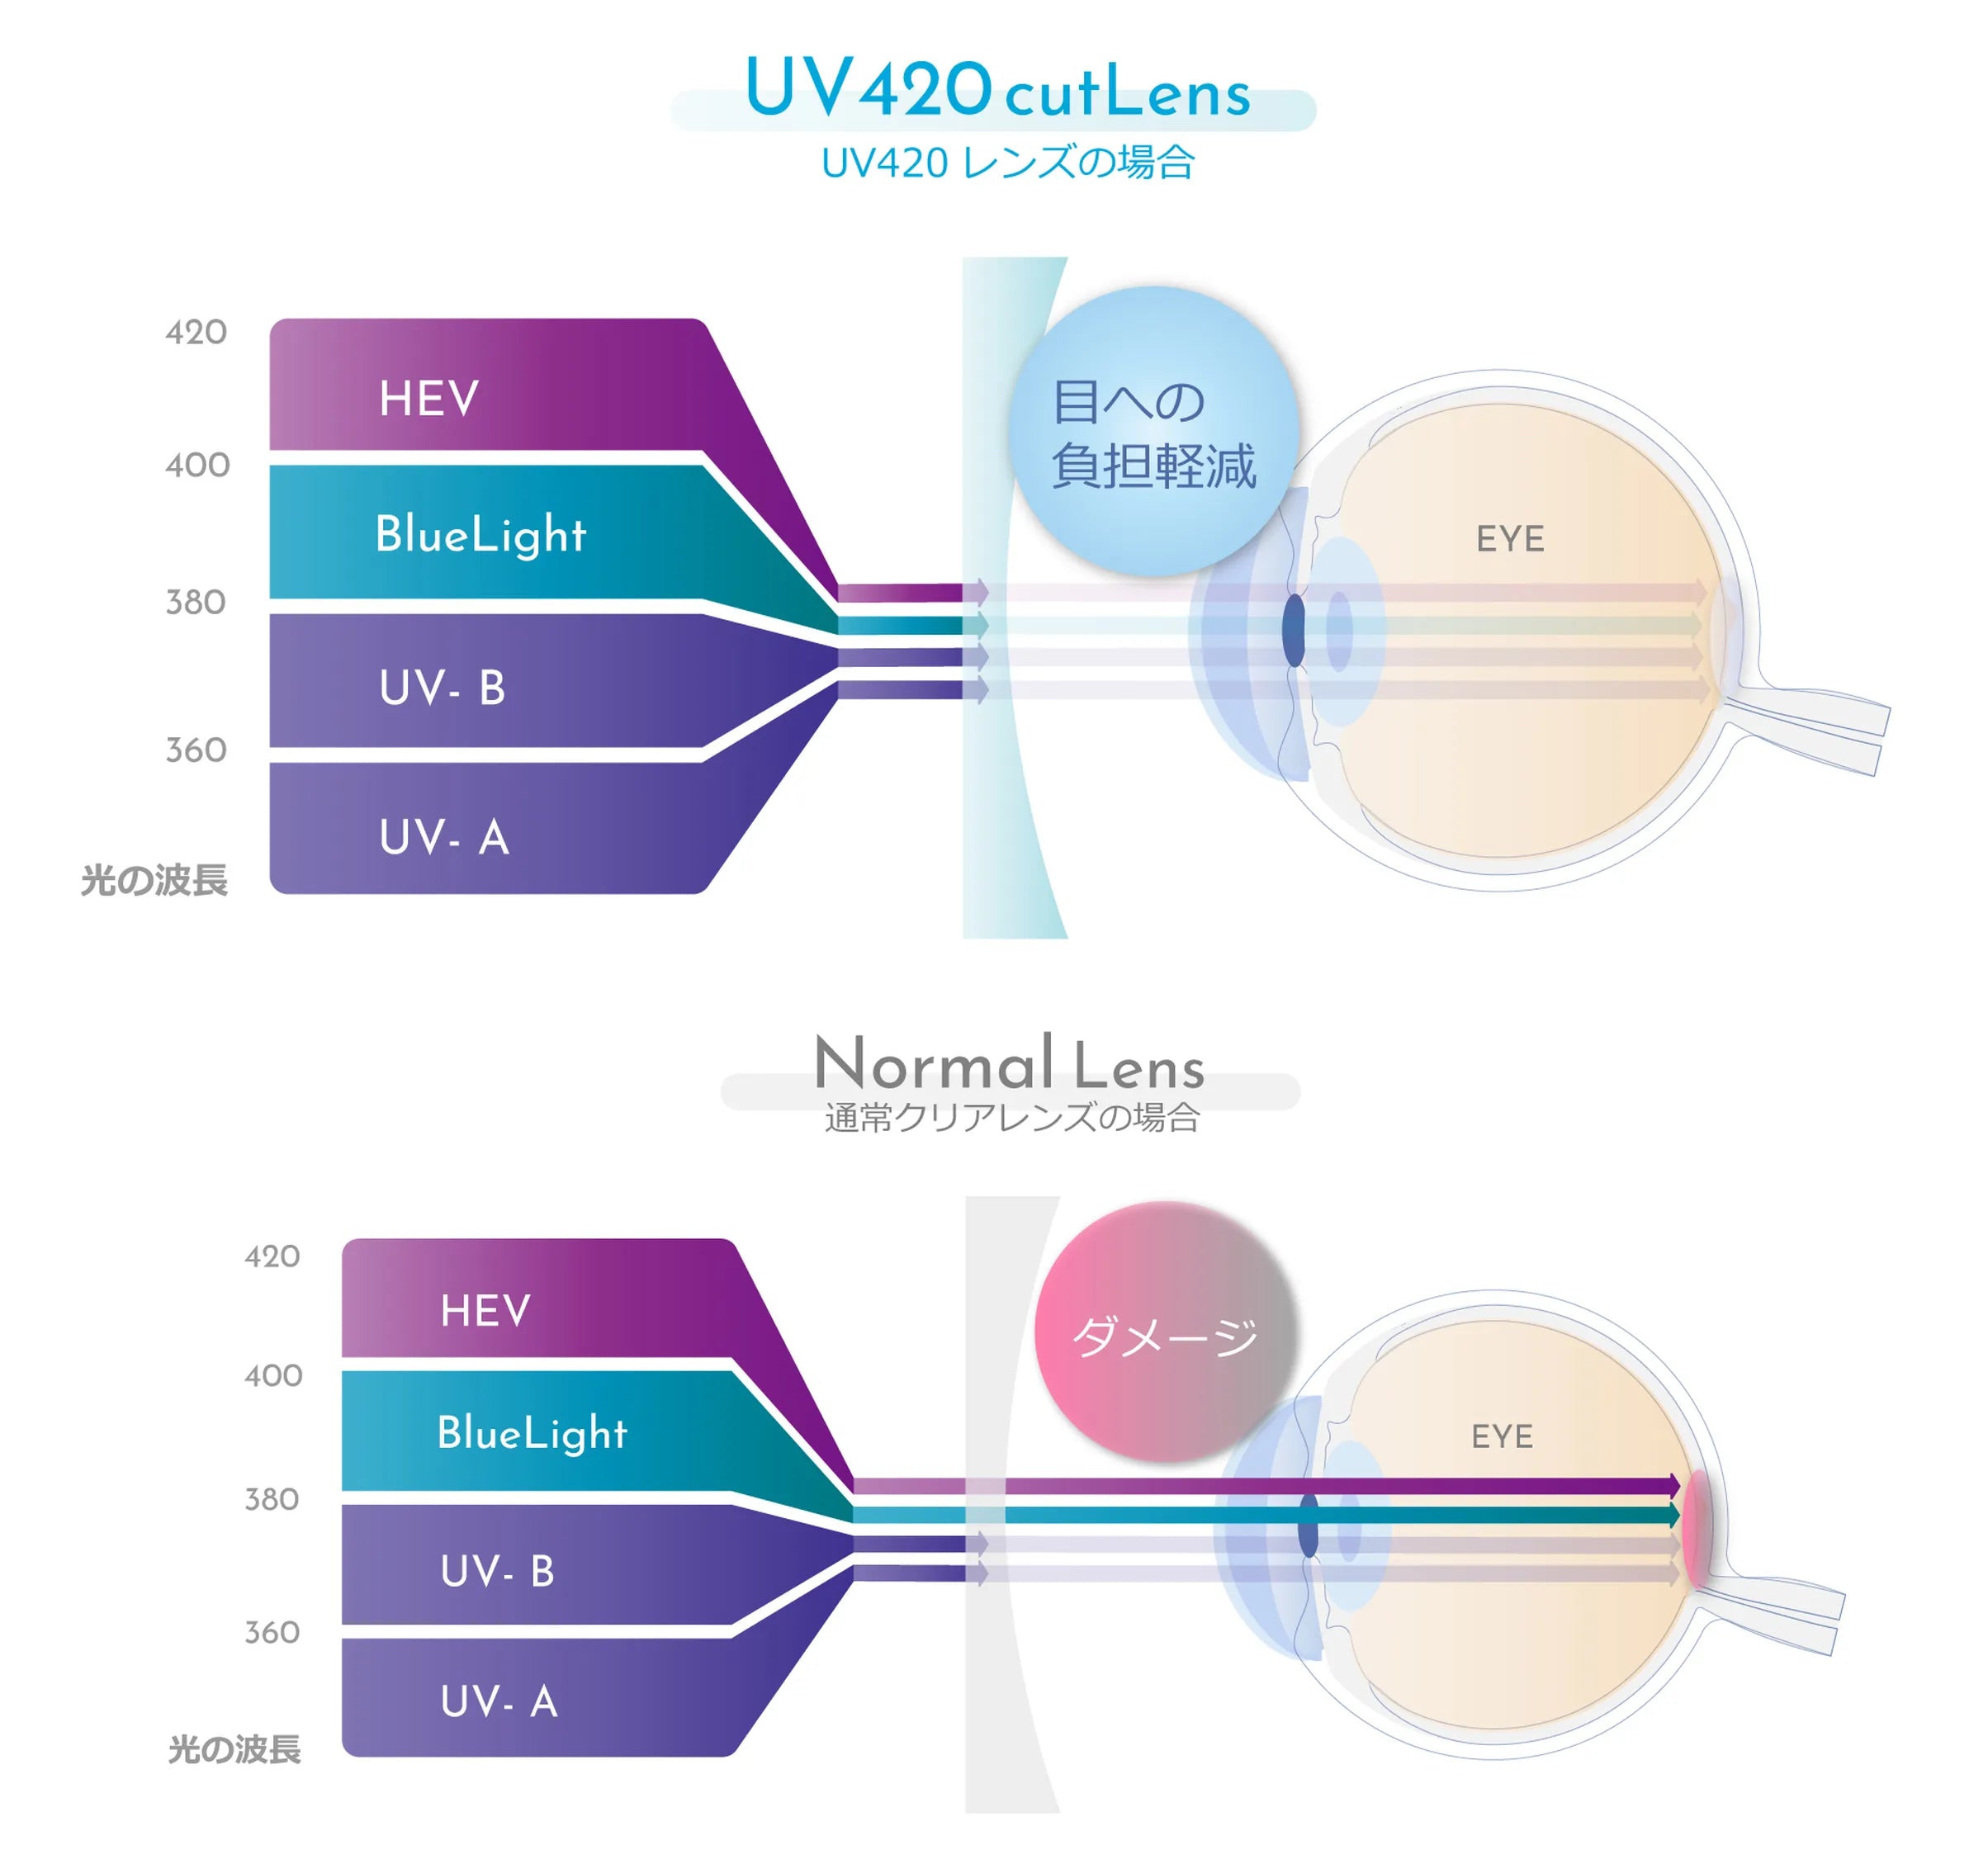 ノーマルレンズはHEVを通すため眼球にダメージを与えるがUV420カットレンズはHEVをブロックするのでダメージが減少する